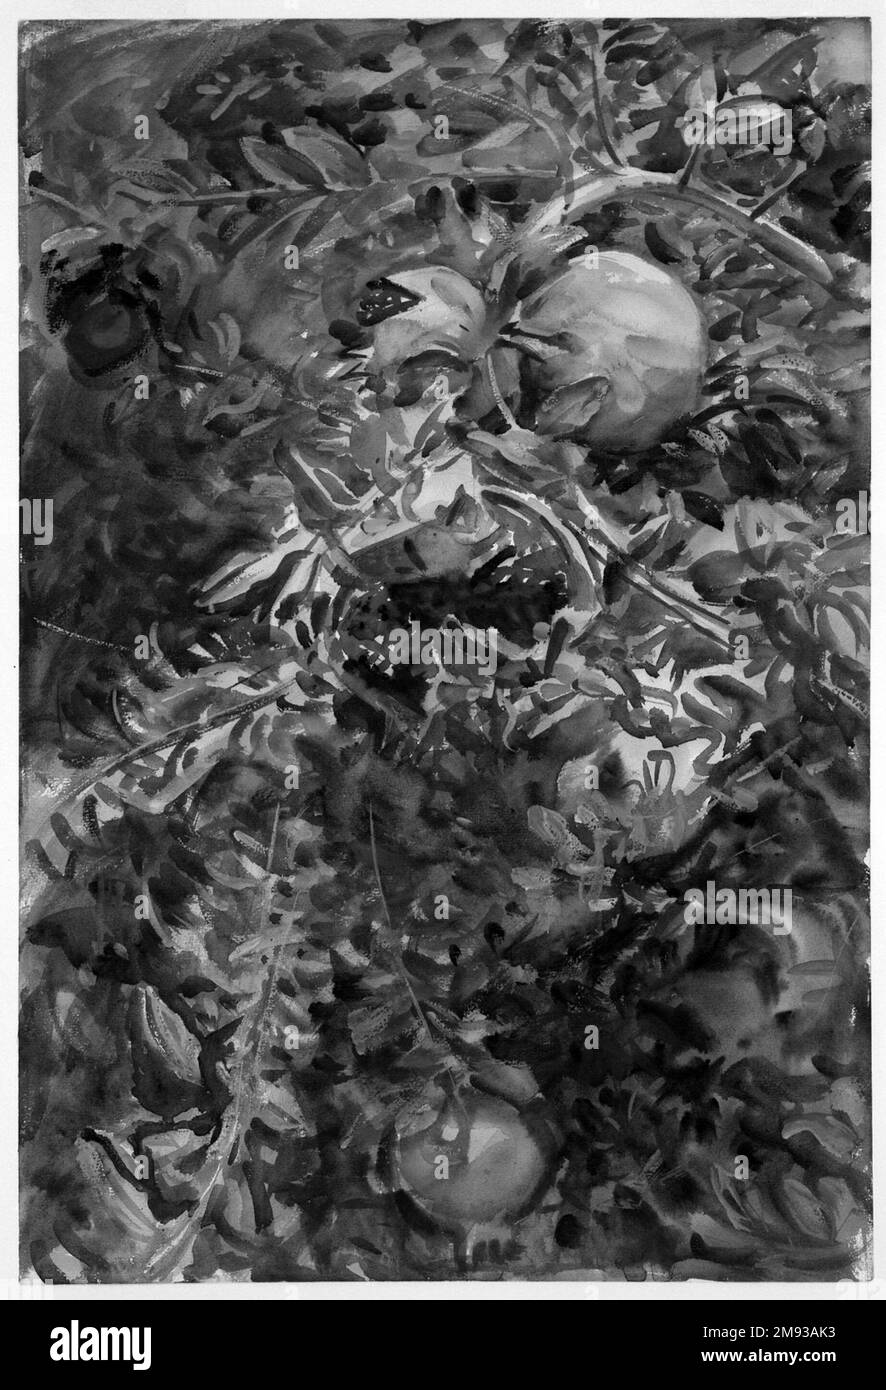 Granatäpfel John Singer Sargent (Amerikaner, geboren in Italien, 1856-1925). Granatäpfel, 1908. Undurchsichtige und lichtdurchlässige Aquarelle mit Graphitunterzeichnung, 21 3/16 x 14 7/16in. (53,8 x 36,7cm). Inspiriert von der üppigen Vegetation auf der Insel Mallorca, zeigt Pampelgranaten die Früchte aus nächster Nähe, einige platzen in Blitzen von roten Samen inmitten dichter grüner Blätter. Sargent hat alle räumlichen Bezugspunkte (Himmel oder Boden) ausgelassen und die Farbe und Struktur bis zum Rand des Blattes erweitert, wodurch die dekorative zweidimensionale Komposition erhöht wurde. In einigen Passagen seine Energie Stockfoto